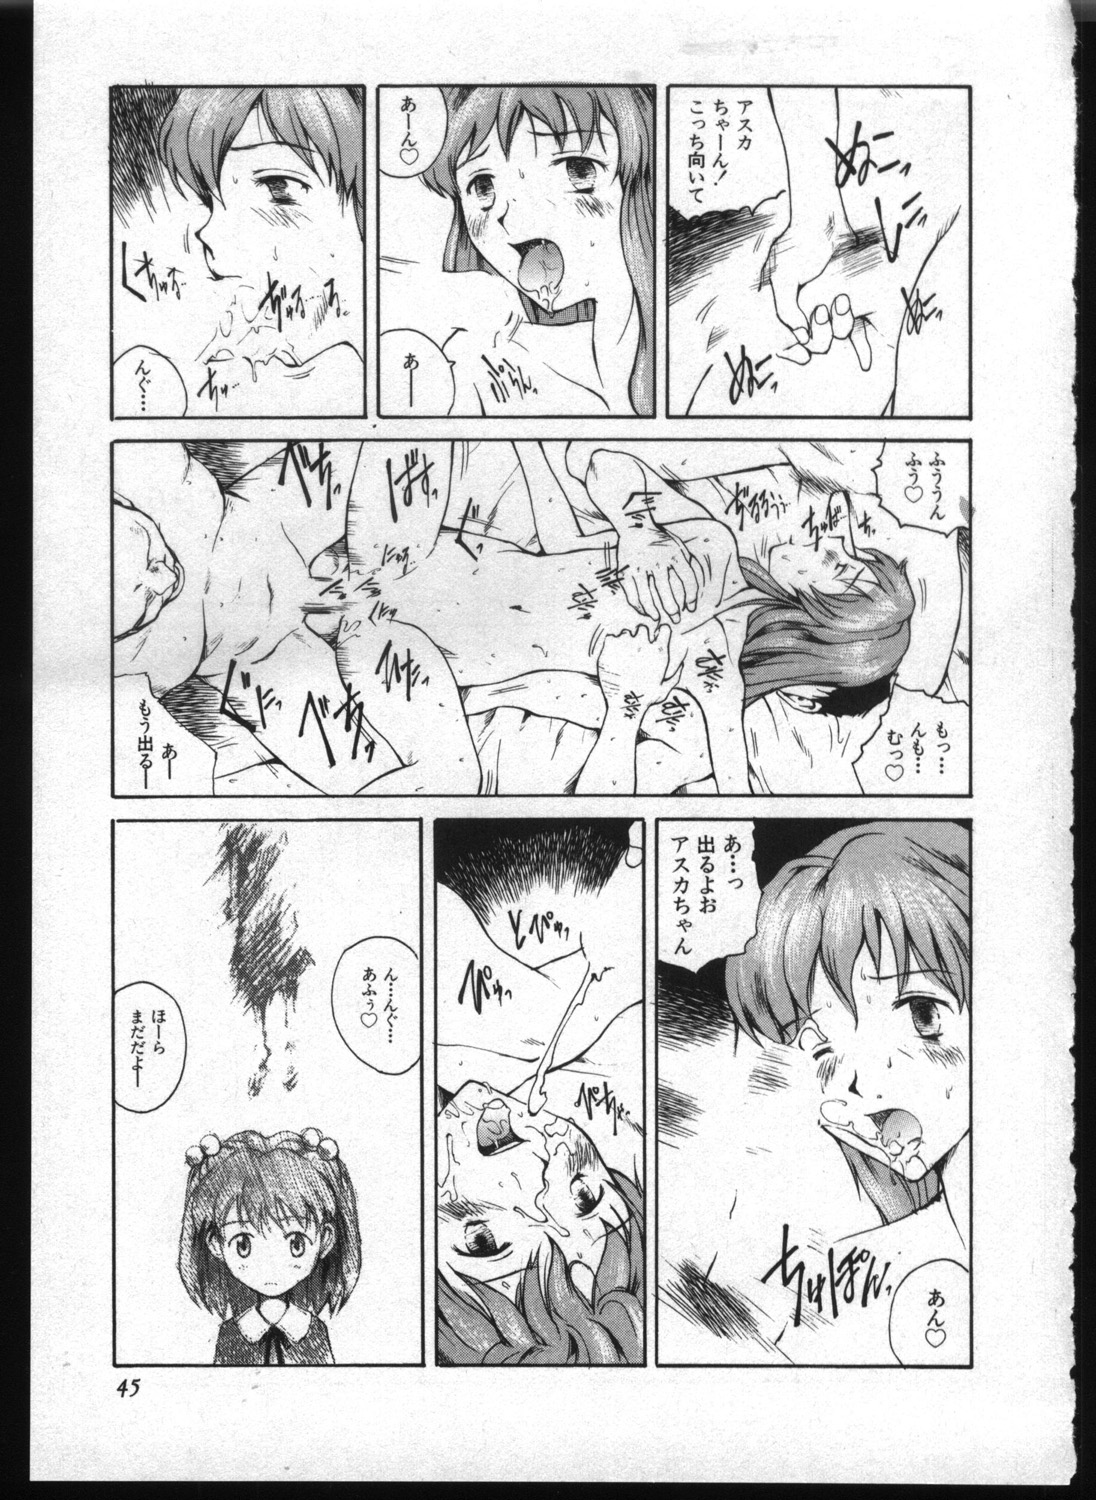 [Anthology] Shitsurakuen 7 | Paradise Lost 7 (Neon Genesis Evangelion) page 43 full